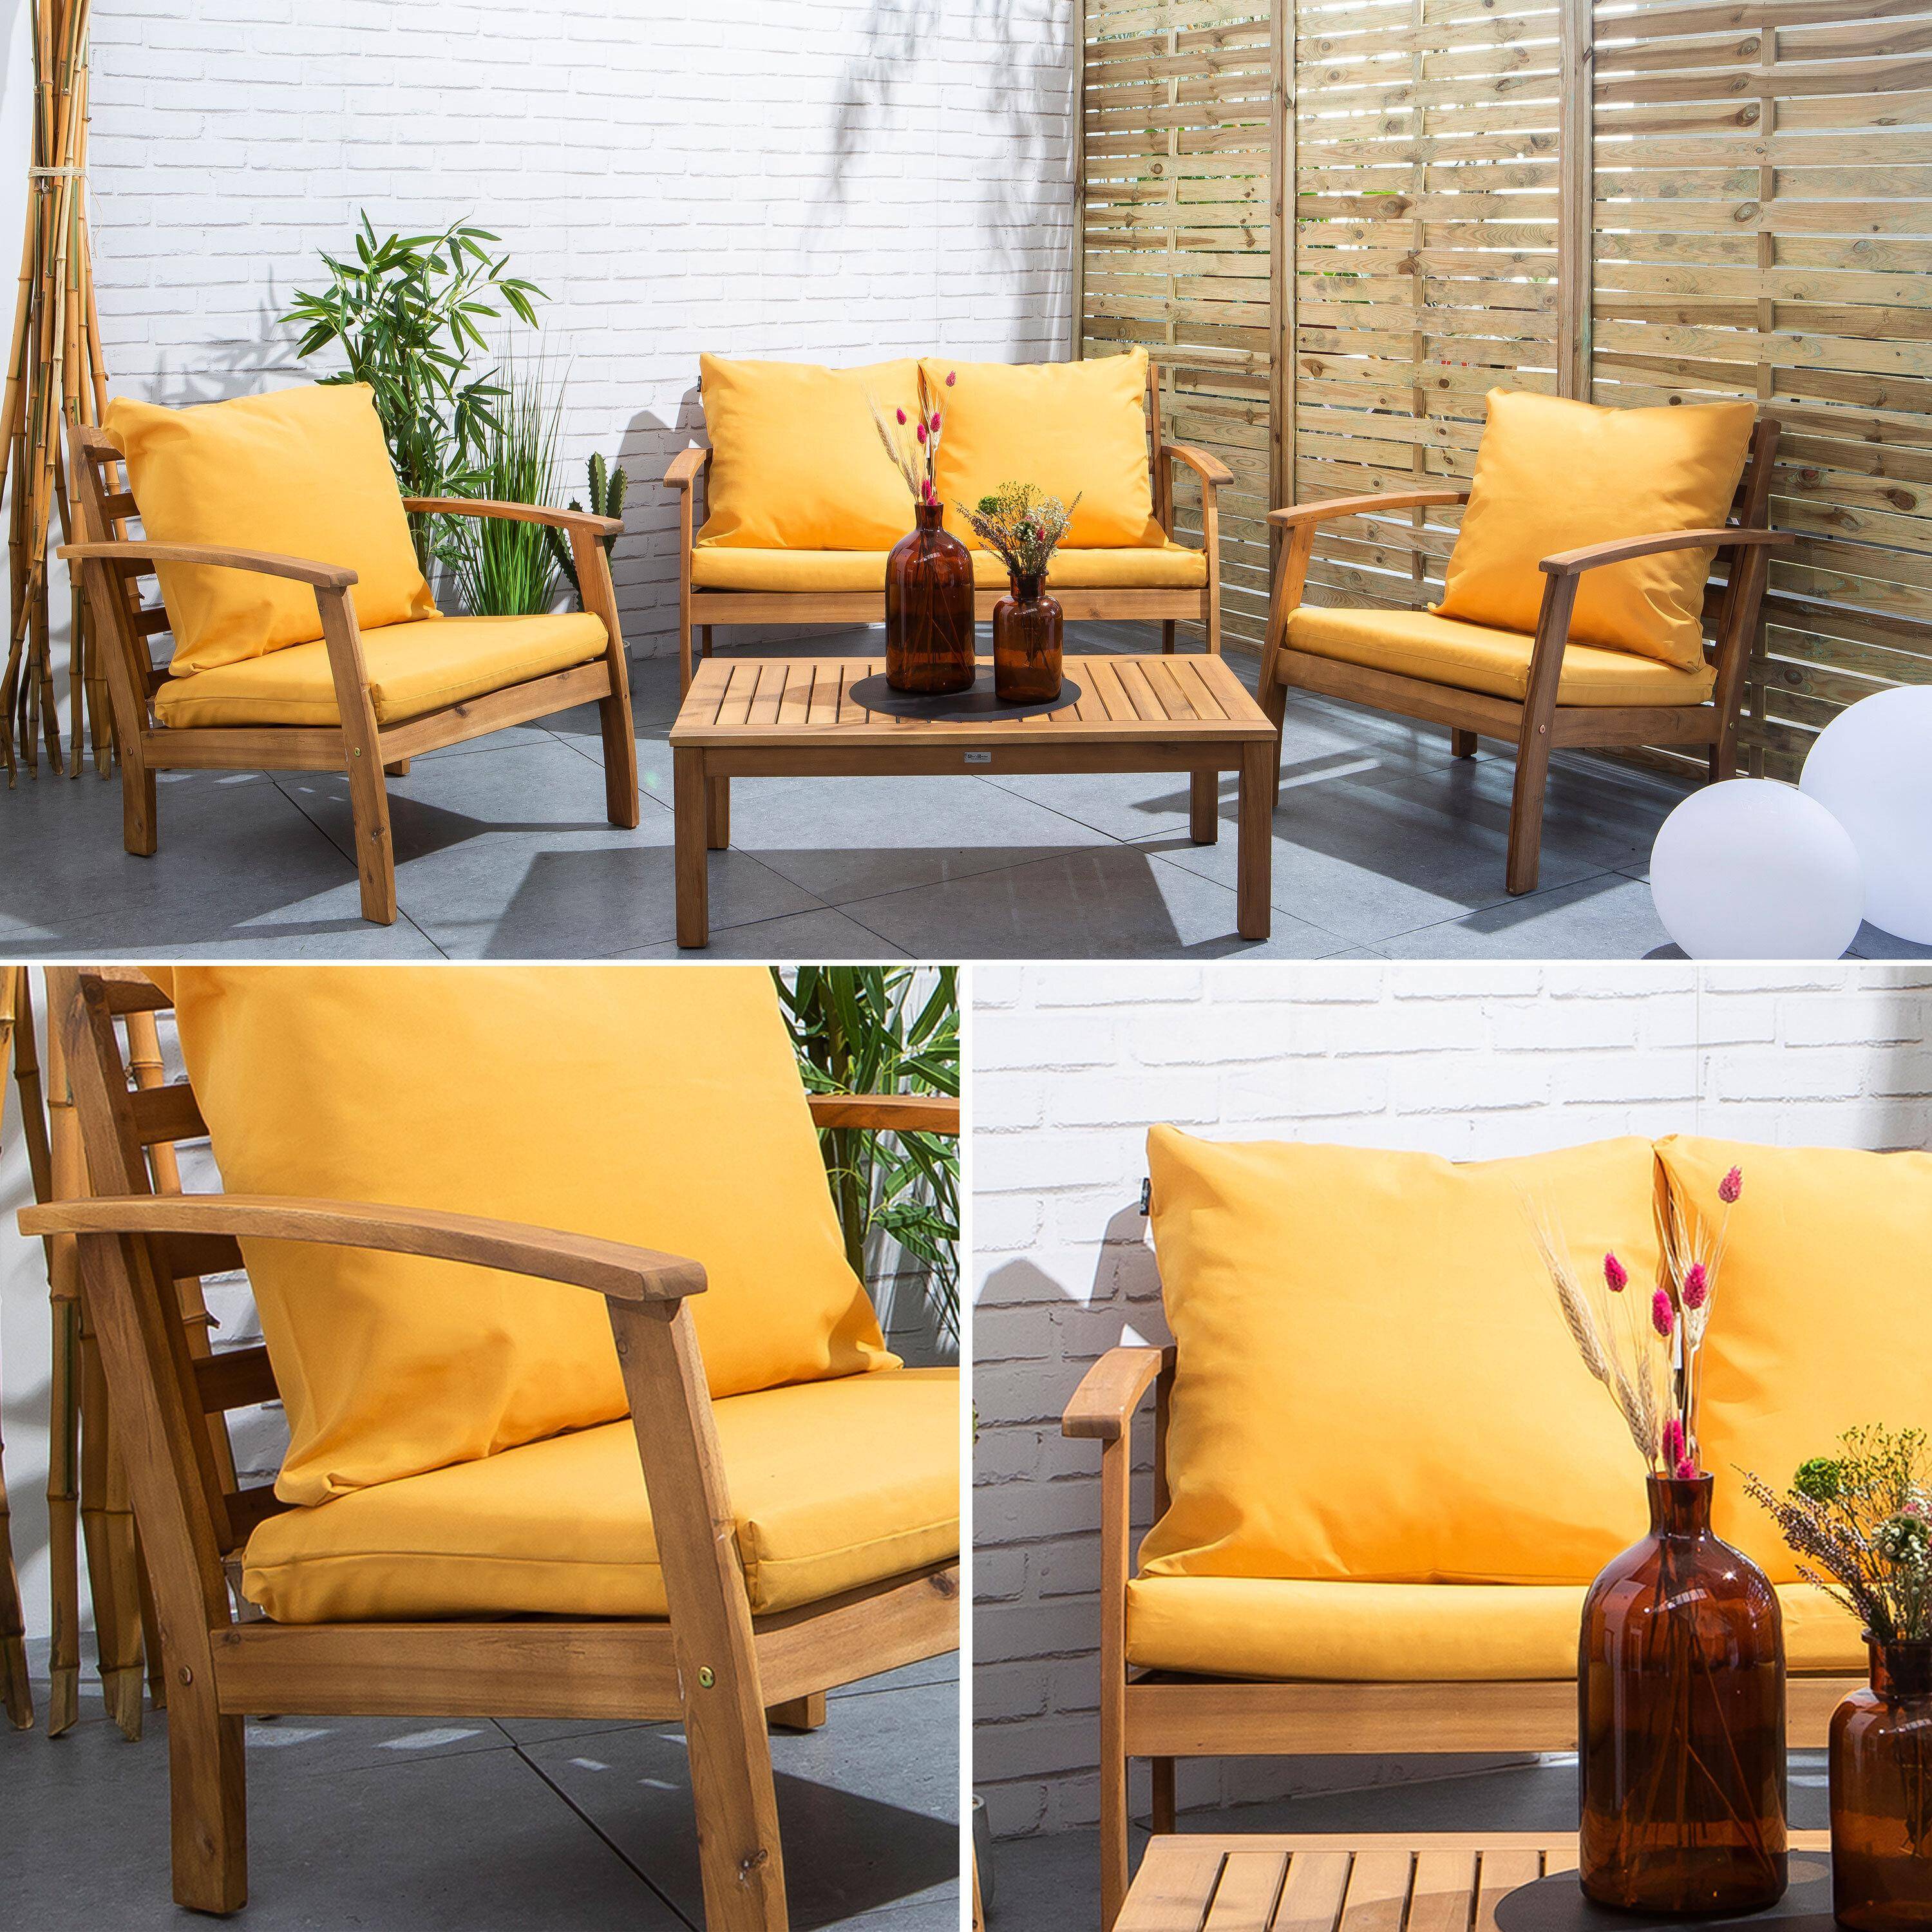 Salon de jardin en bois 4 places - Ushuaïa - Coussins moutarde, canapé, fauteuils et table basse en acacia, design Photo9